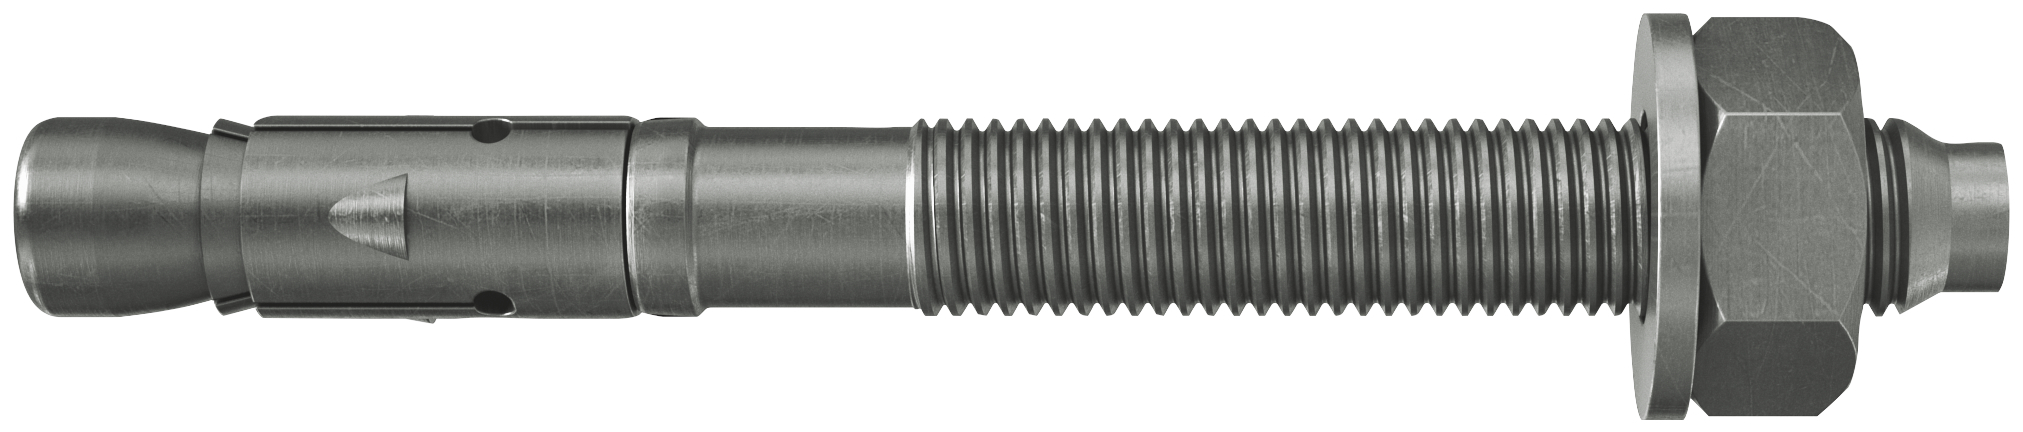 fischer Tassello acciaio FAZ II 10/100 A4 (20 Pz.) L'ancorante ad espansione ad alte prestazioni per carichi statici su calcestruzzo fessurato e per applicazioni sismiche. Versione in acciaio inossidabile con classe di resistenza alla corrosione CRC III..